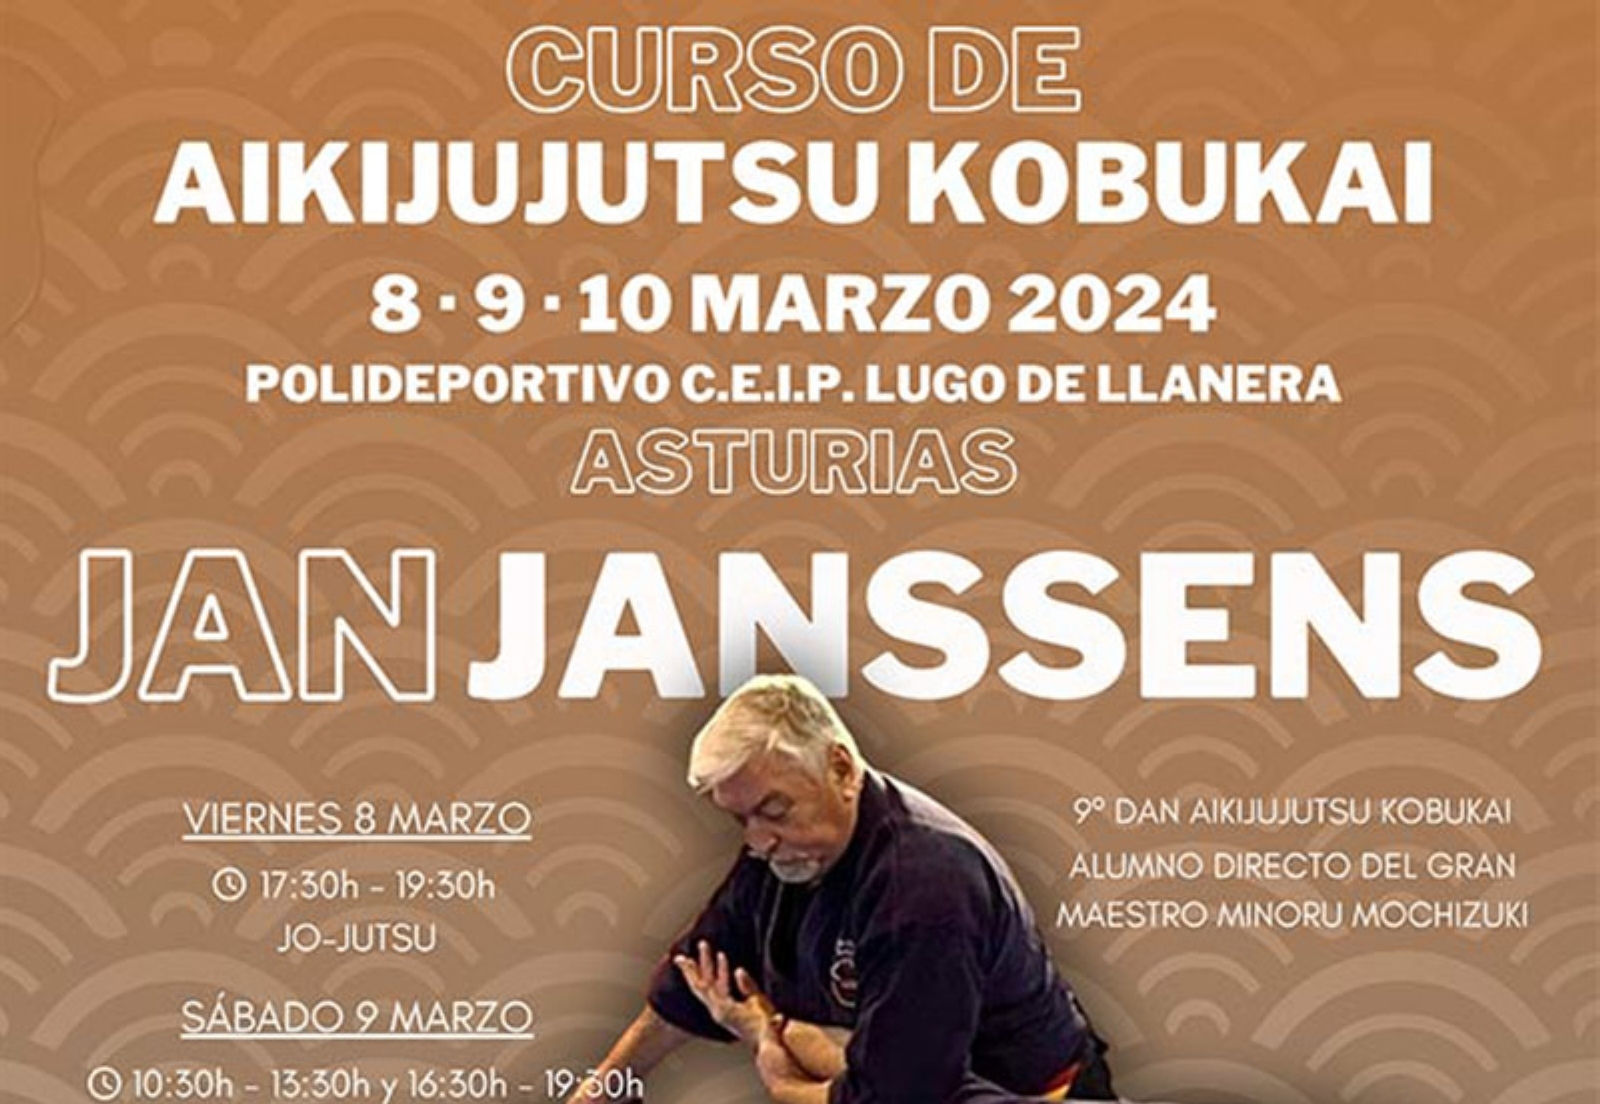 Curso de Aikijujutsu Kobukai en Asturias